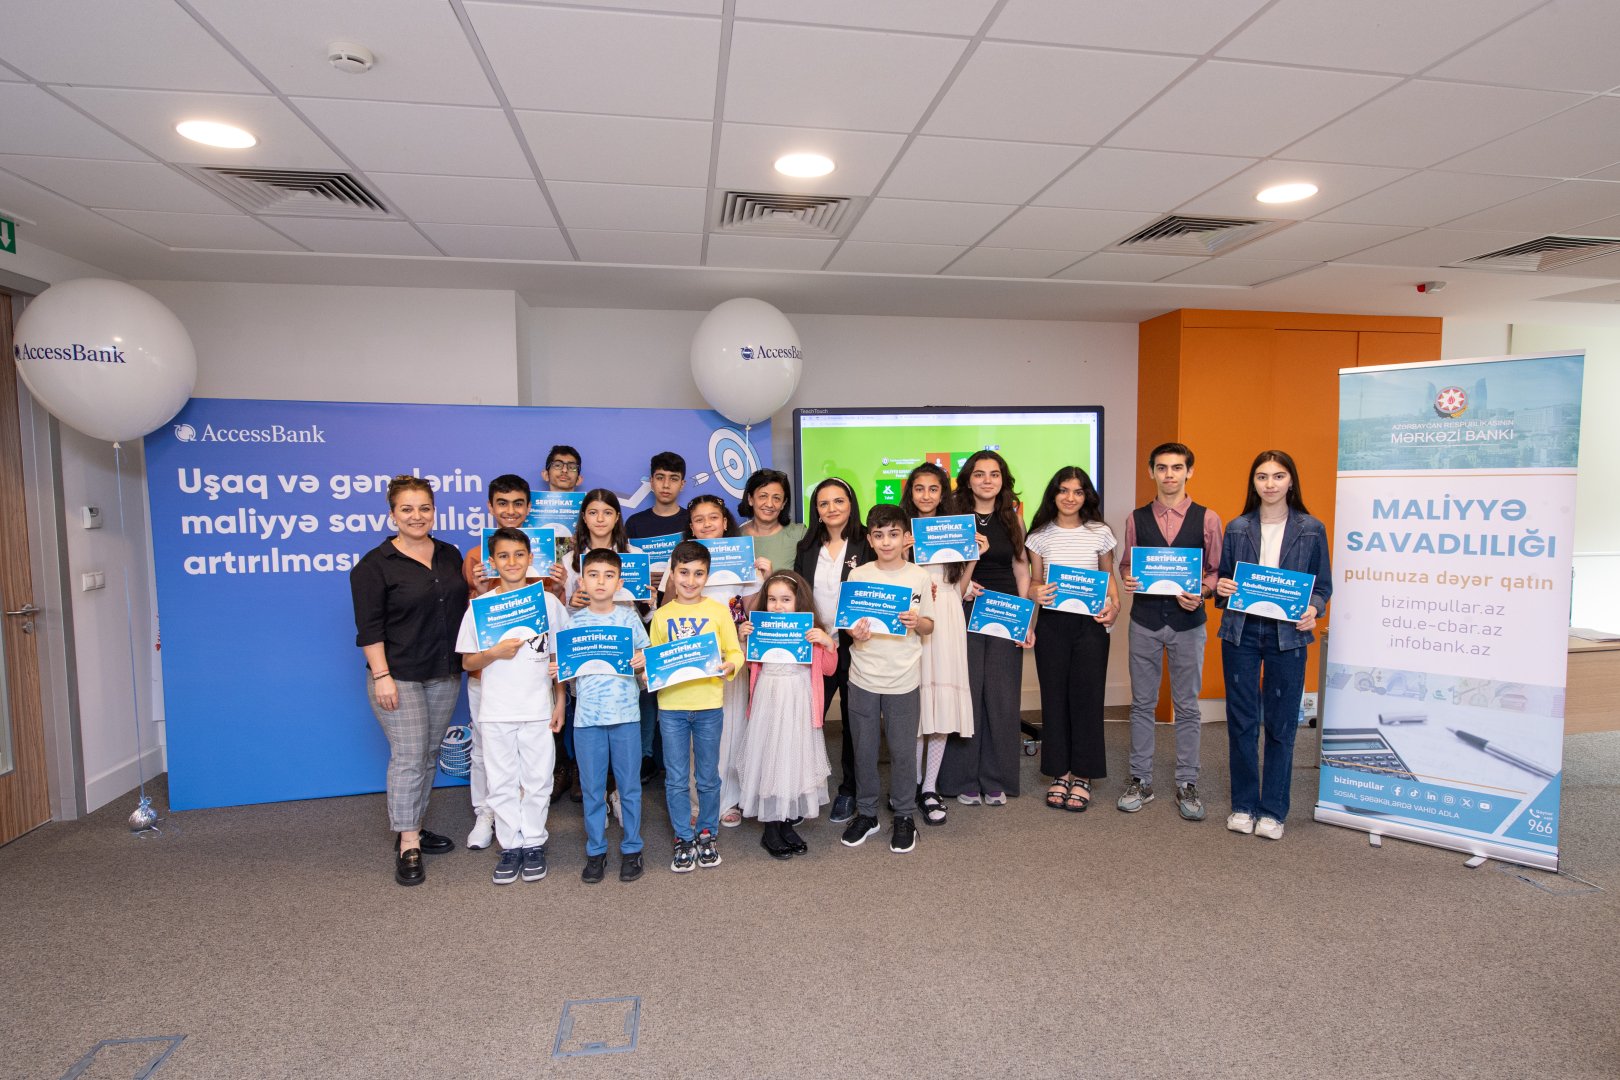 AccessBank организовал образовательное мероприятие для детей журналистов к Международному Дню Защиты Детей (ФОТО/ВИДЕО)